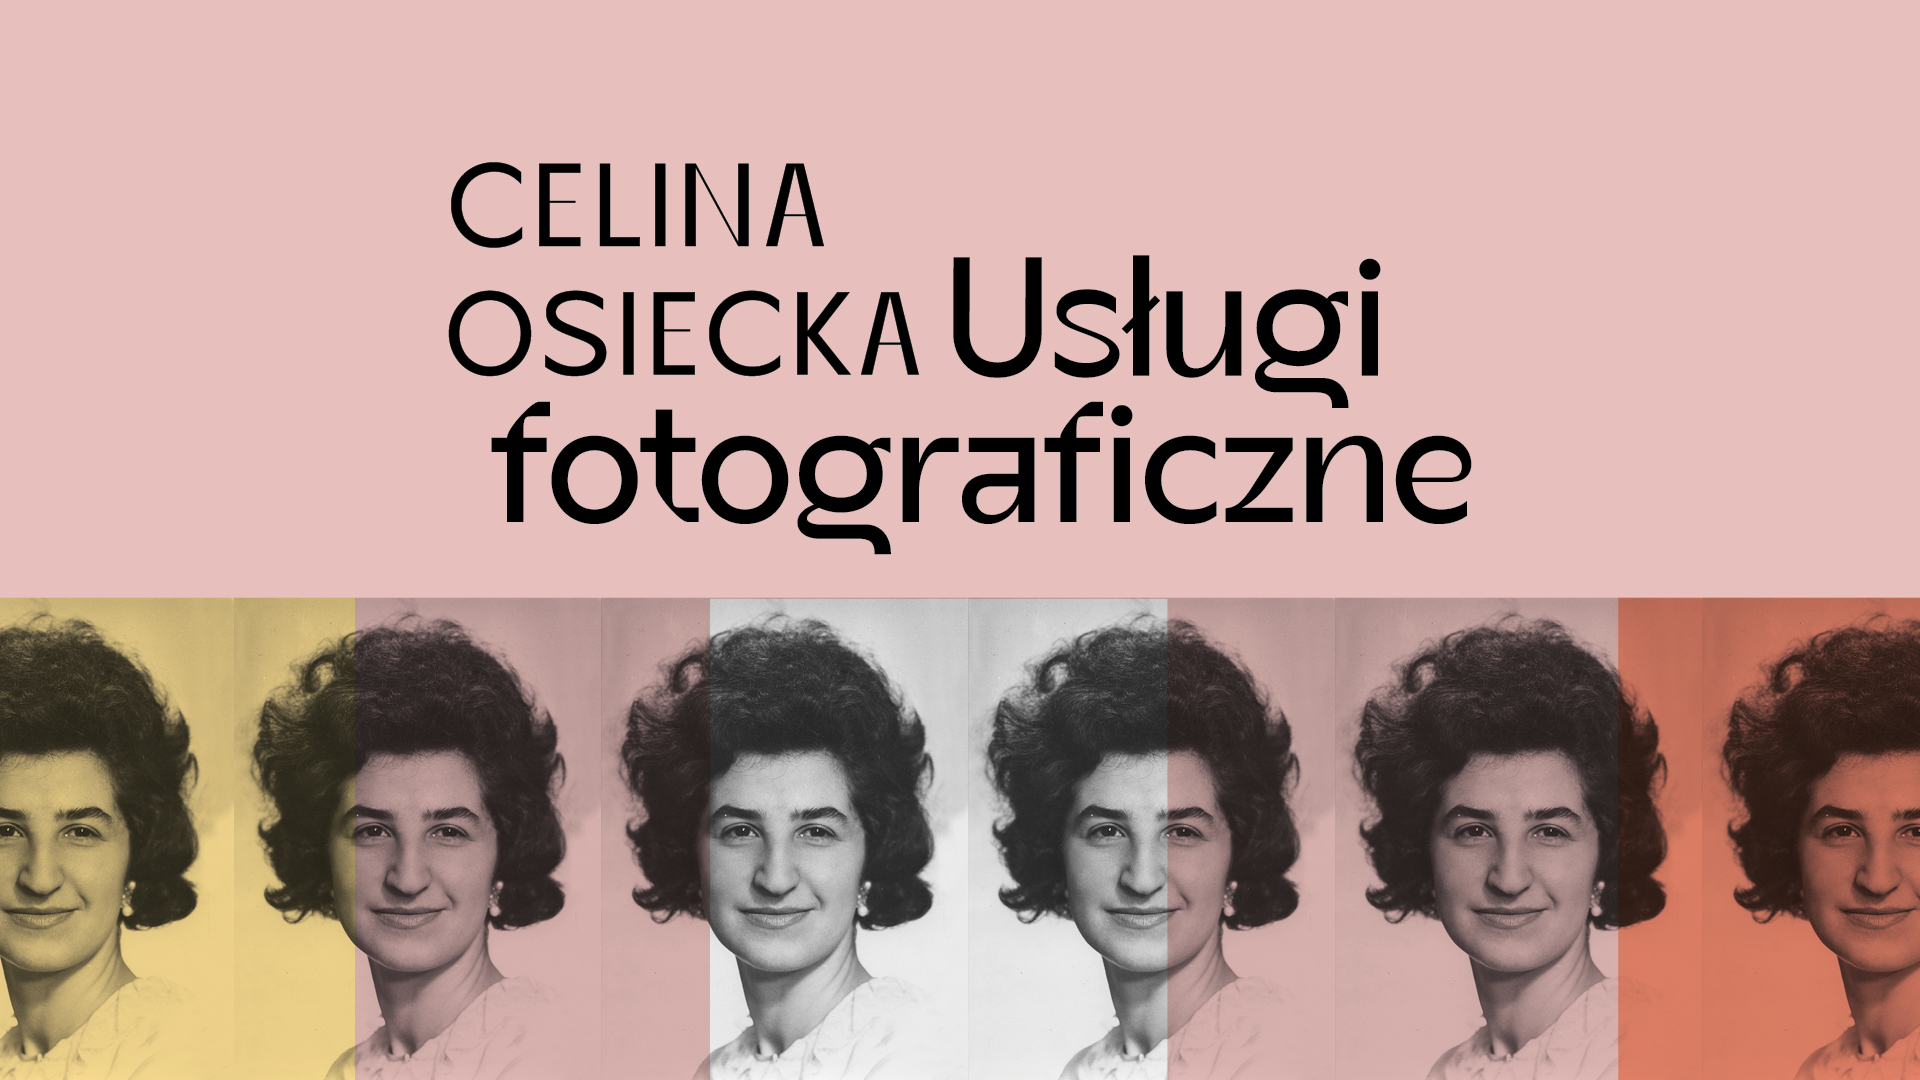 Grafika. Na górze na różowym tle napis Celina Osiecka. Usługi fotograficzne. Poniżej wielokrotny portret uśmiechniętej Celiny Osieckiej z nałożonym filtrem w różnych pastelowych kolorach.